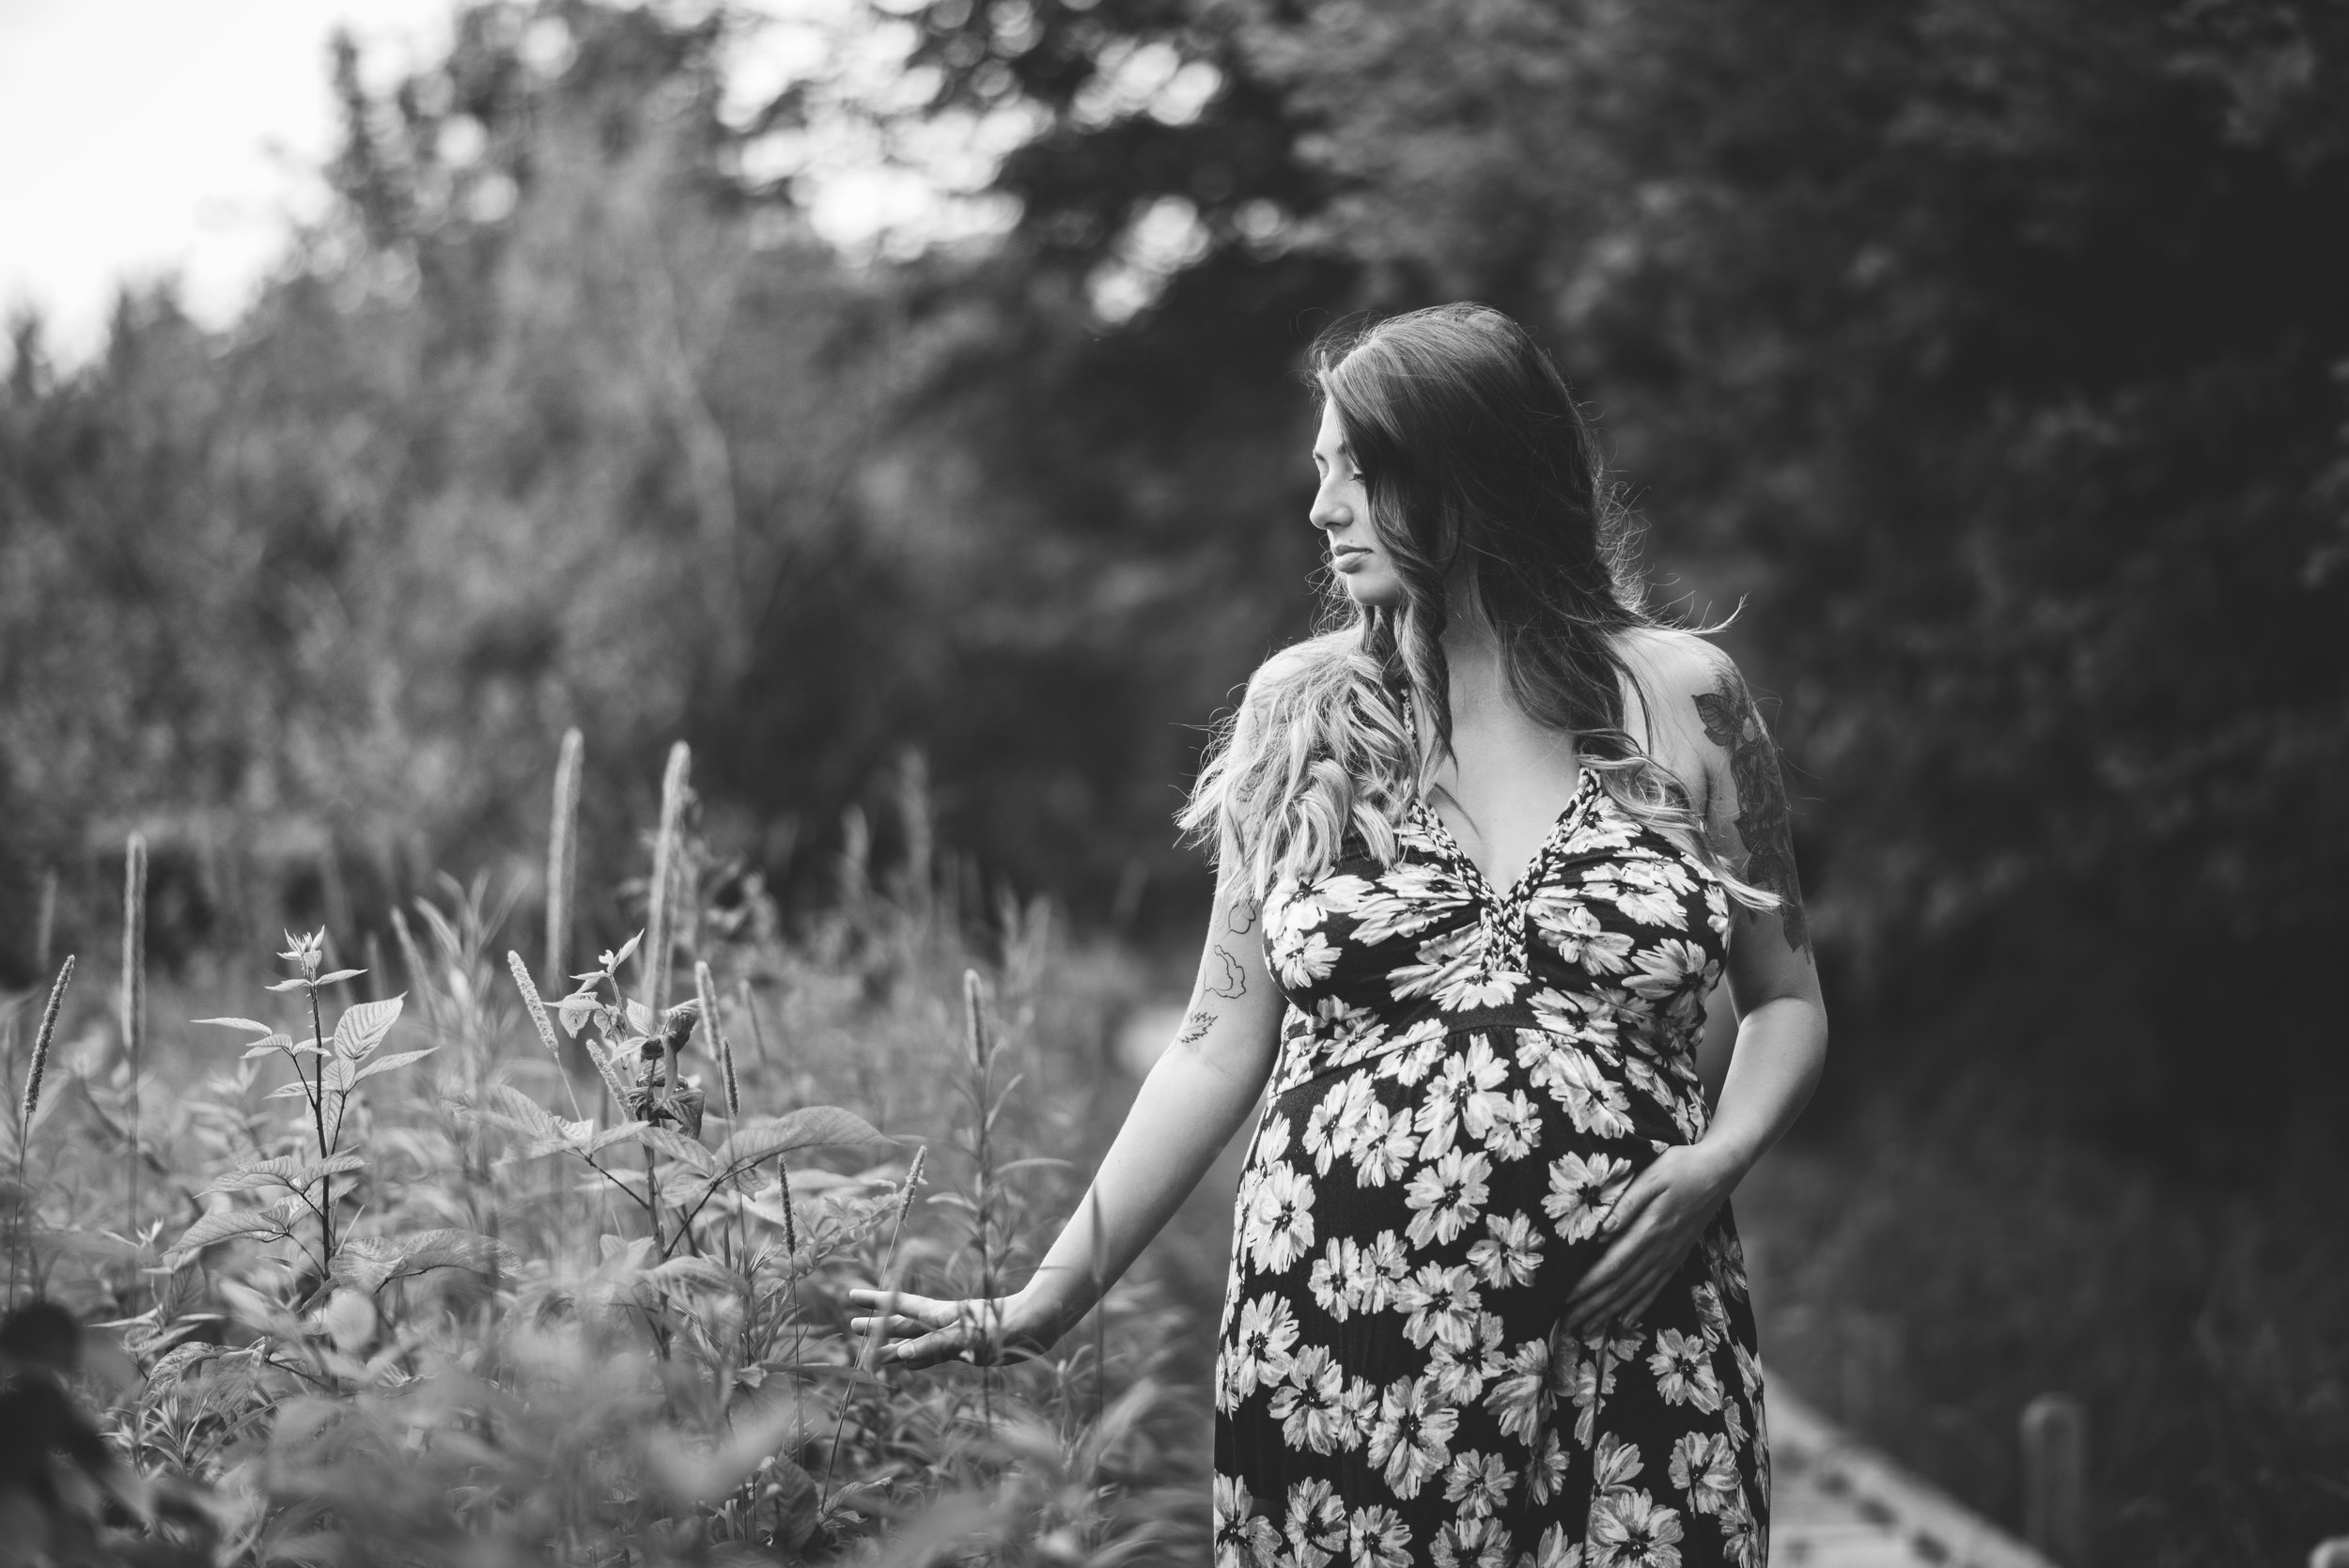 Ariel Maternity. Wintergarden Park. Bowling Green, Ohio. — Rebecca ...